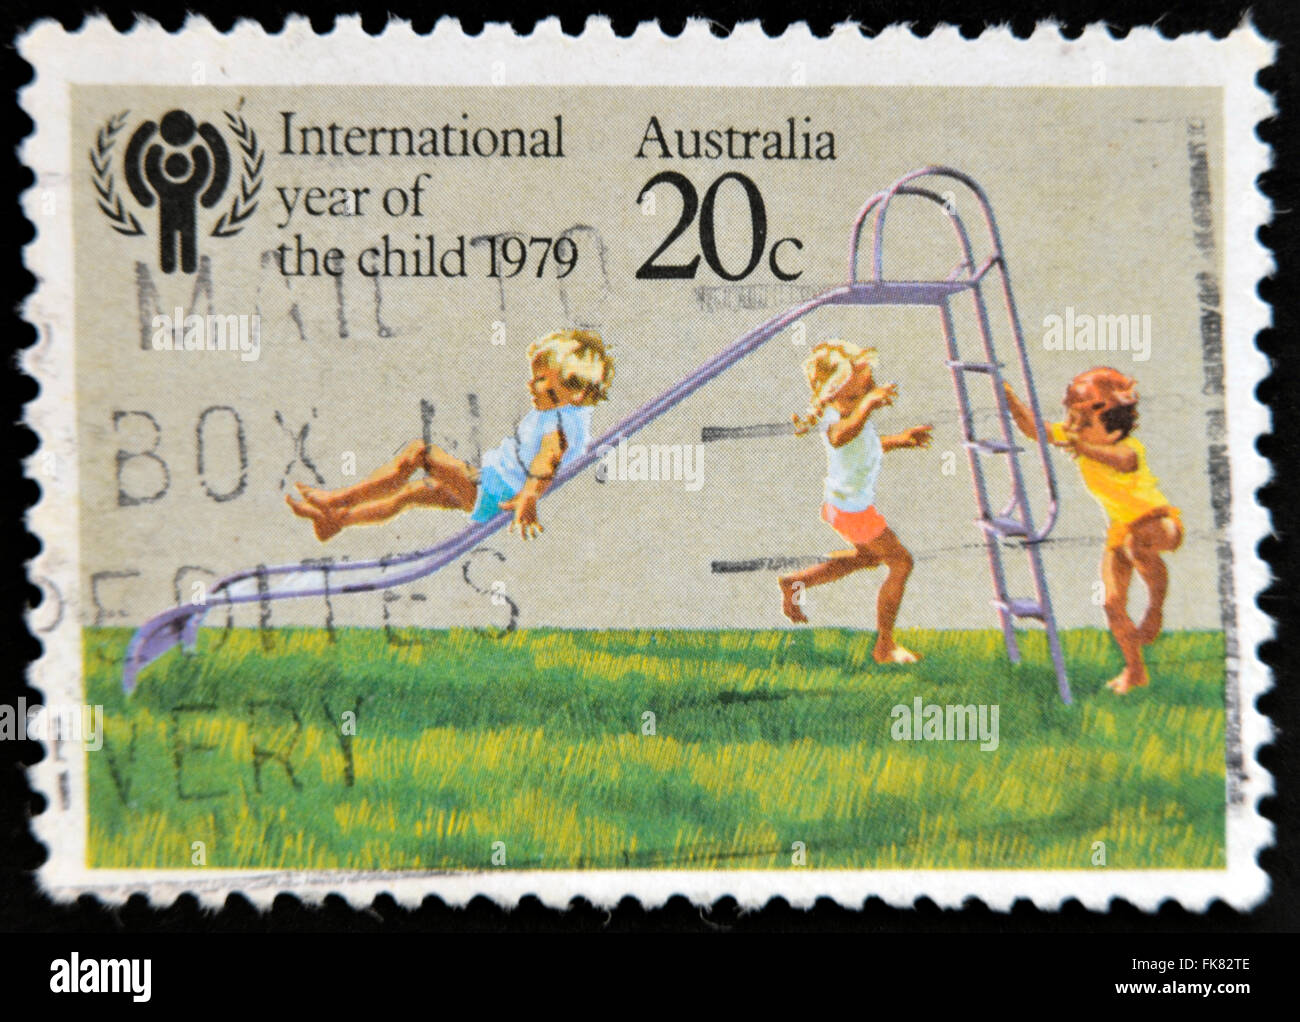 L'AUSTRALIE - circa 1979 : timbre imprimé en Australie dédié à l'Année internationale de l'enfant montre des enfants jouant sur Banque D'Images